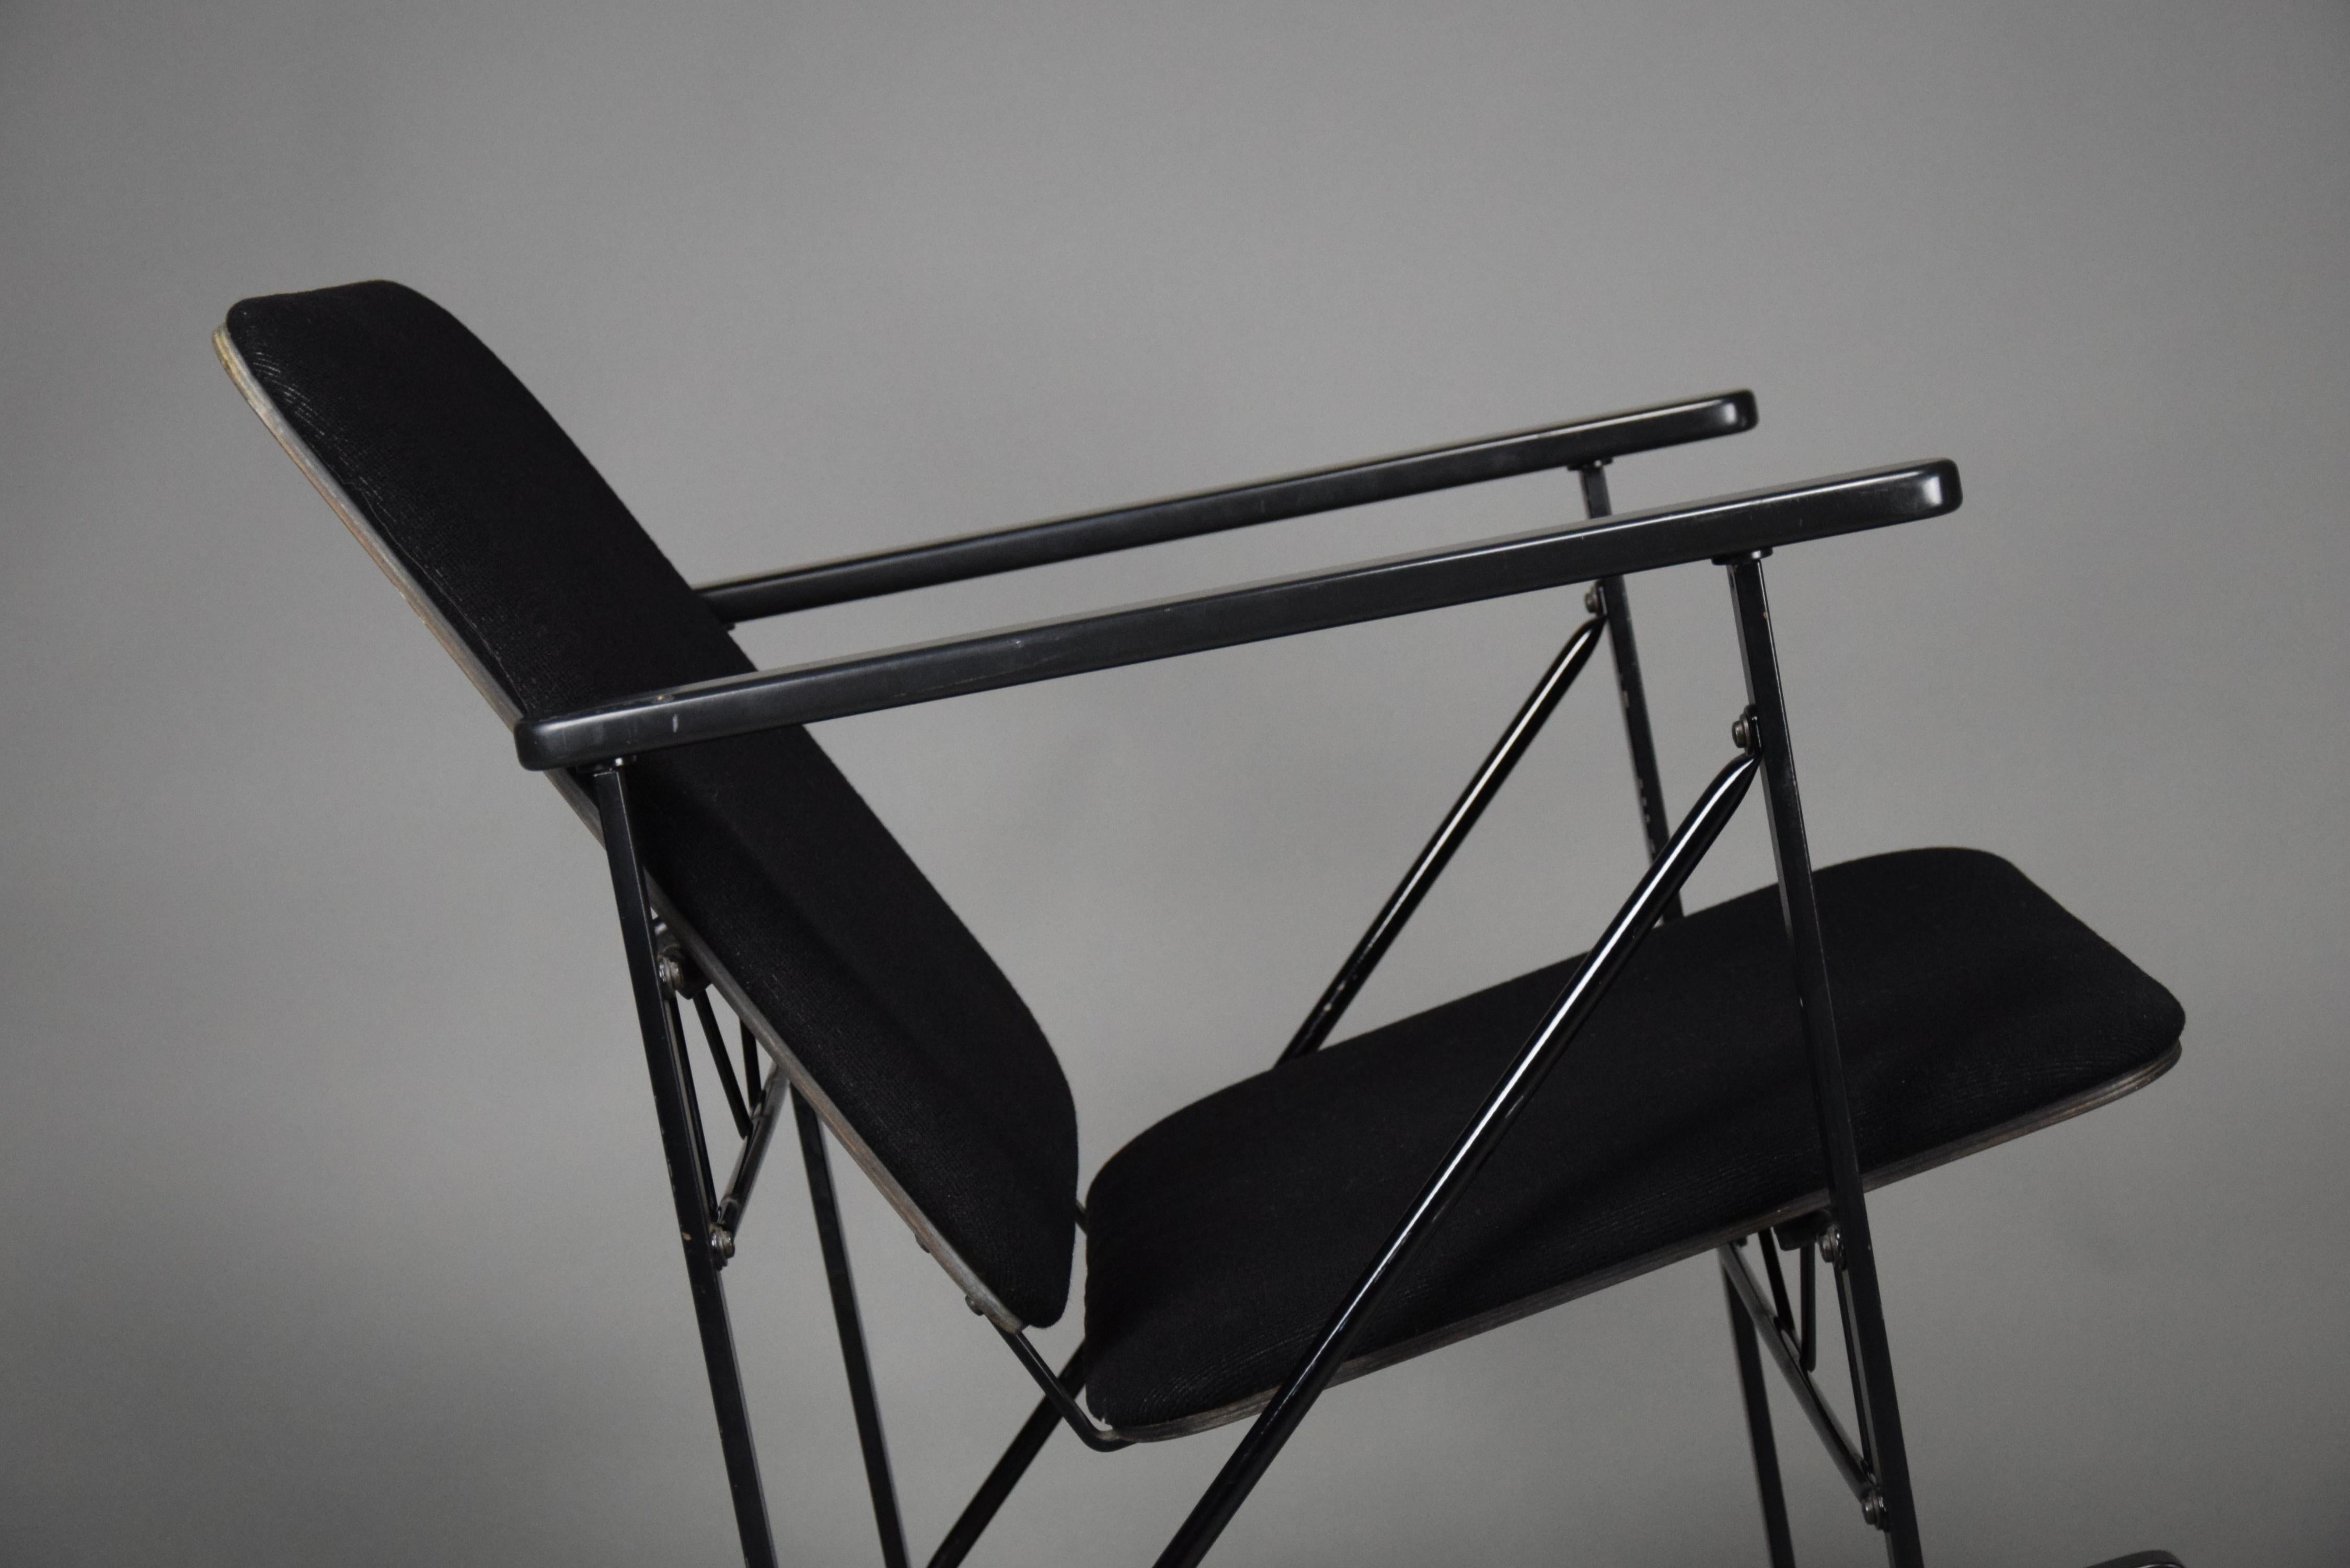 Der minimalistische und schlichte Schaukelstuhl Yrjö Kukkapuro für Avarte ist ein atemberaubendes Möbelstück. Dieser Stuhl ist ein echtes Beispiel für modernes Design, bei dem Form und Funktion im Mittelpunkt stehen und das ein perfektes